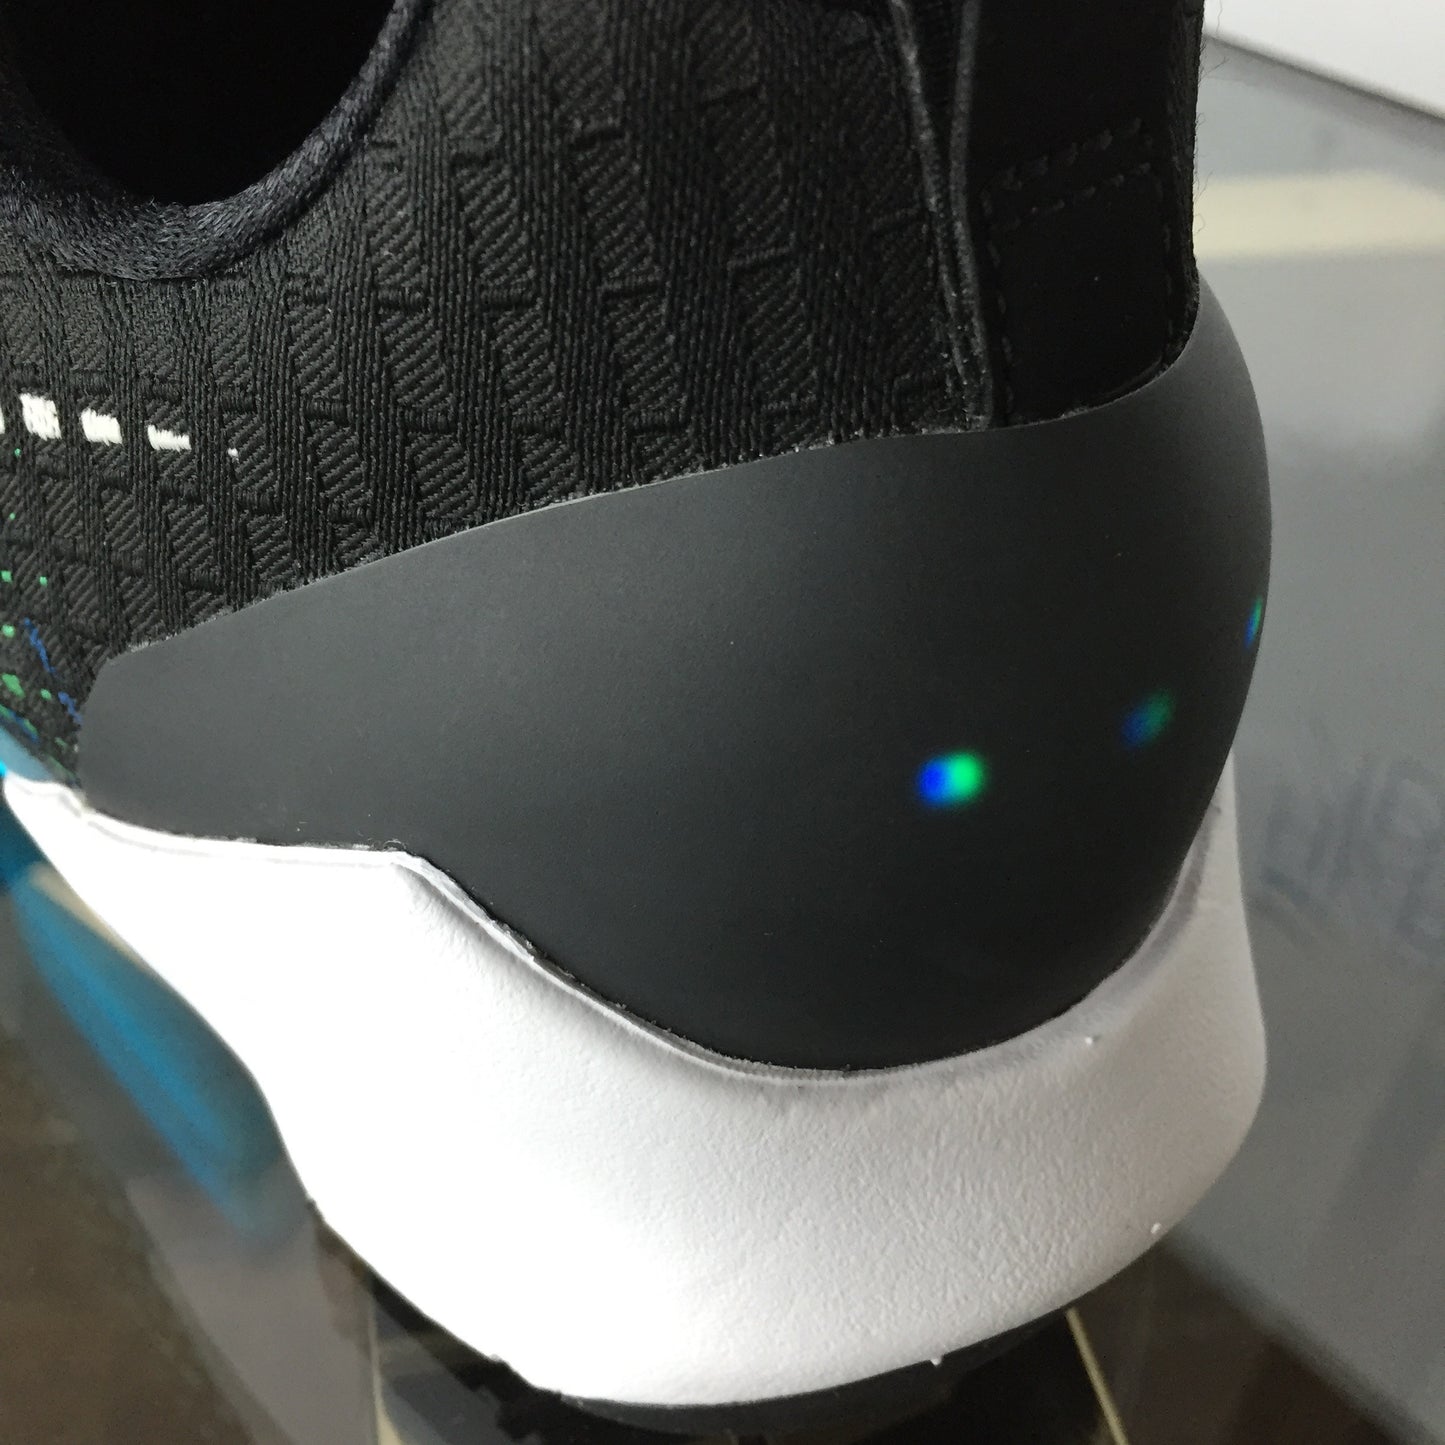 Nike - Hyper Adapt 1.0 Black OG